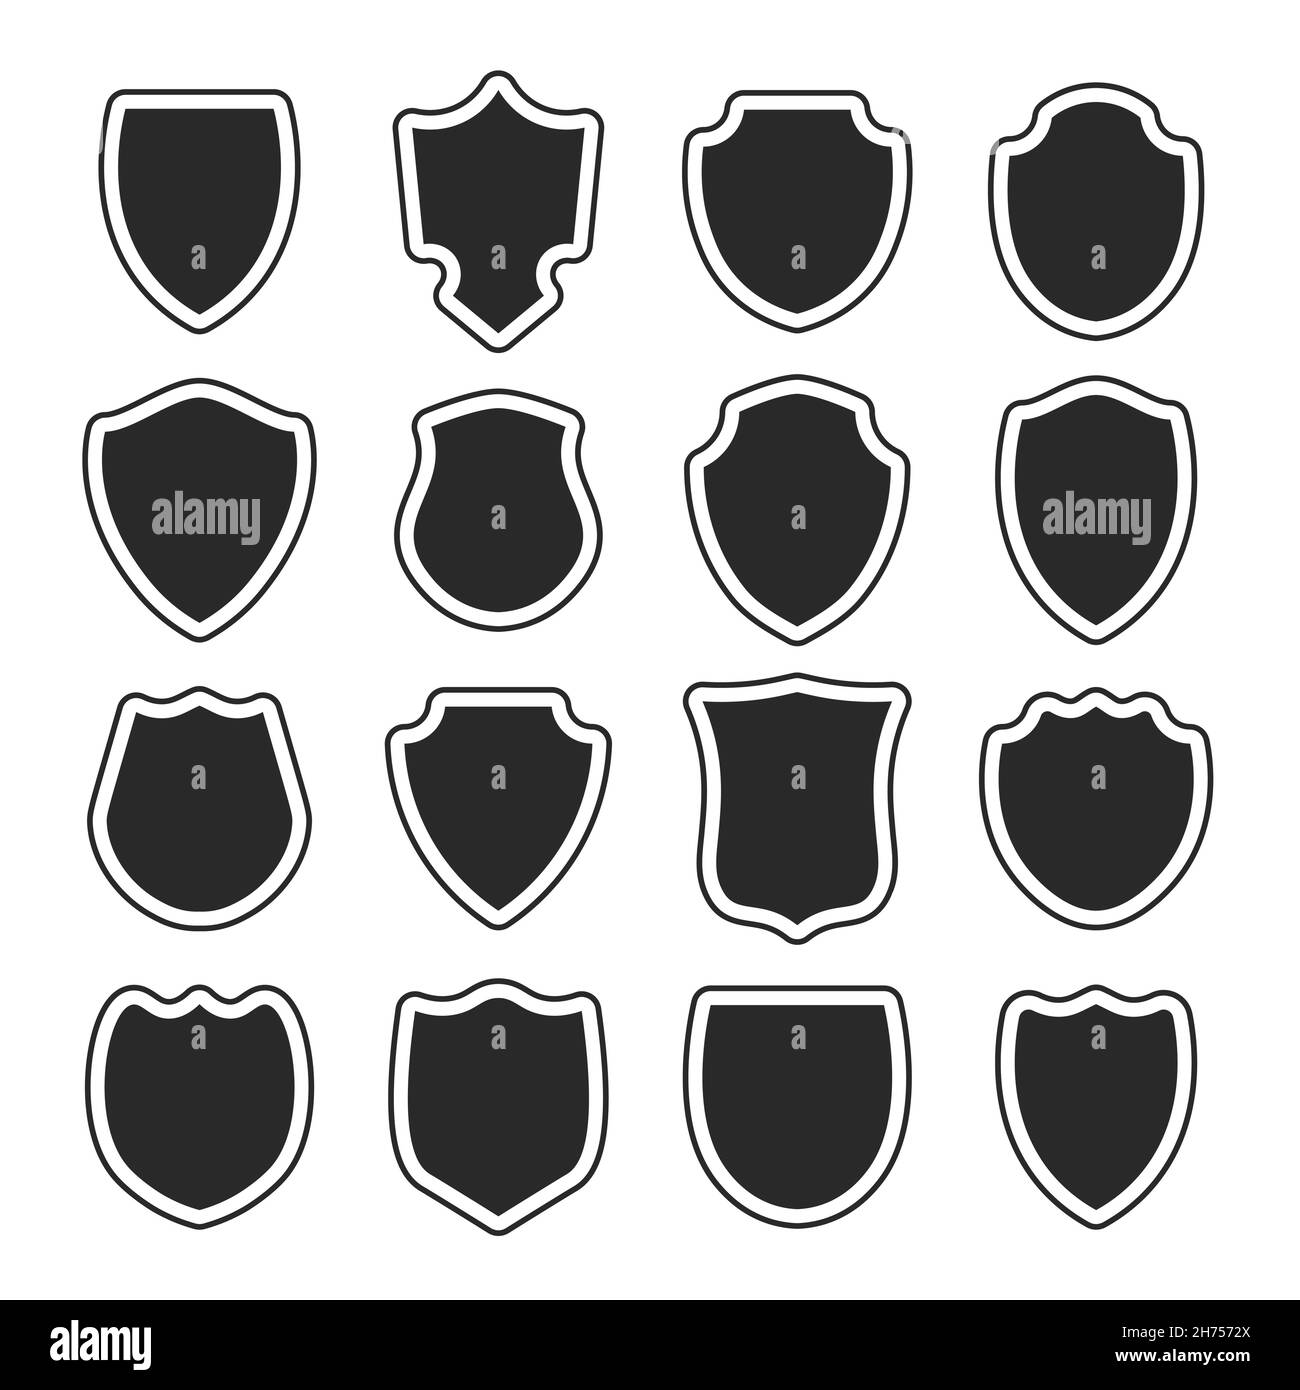 Forma scudo di polizia. Schermi araldici emblemi bianchi. Etichette vettoriali nere di sicurezza. Illustrazione Vettoriale